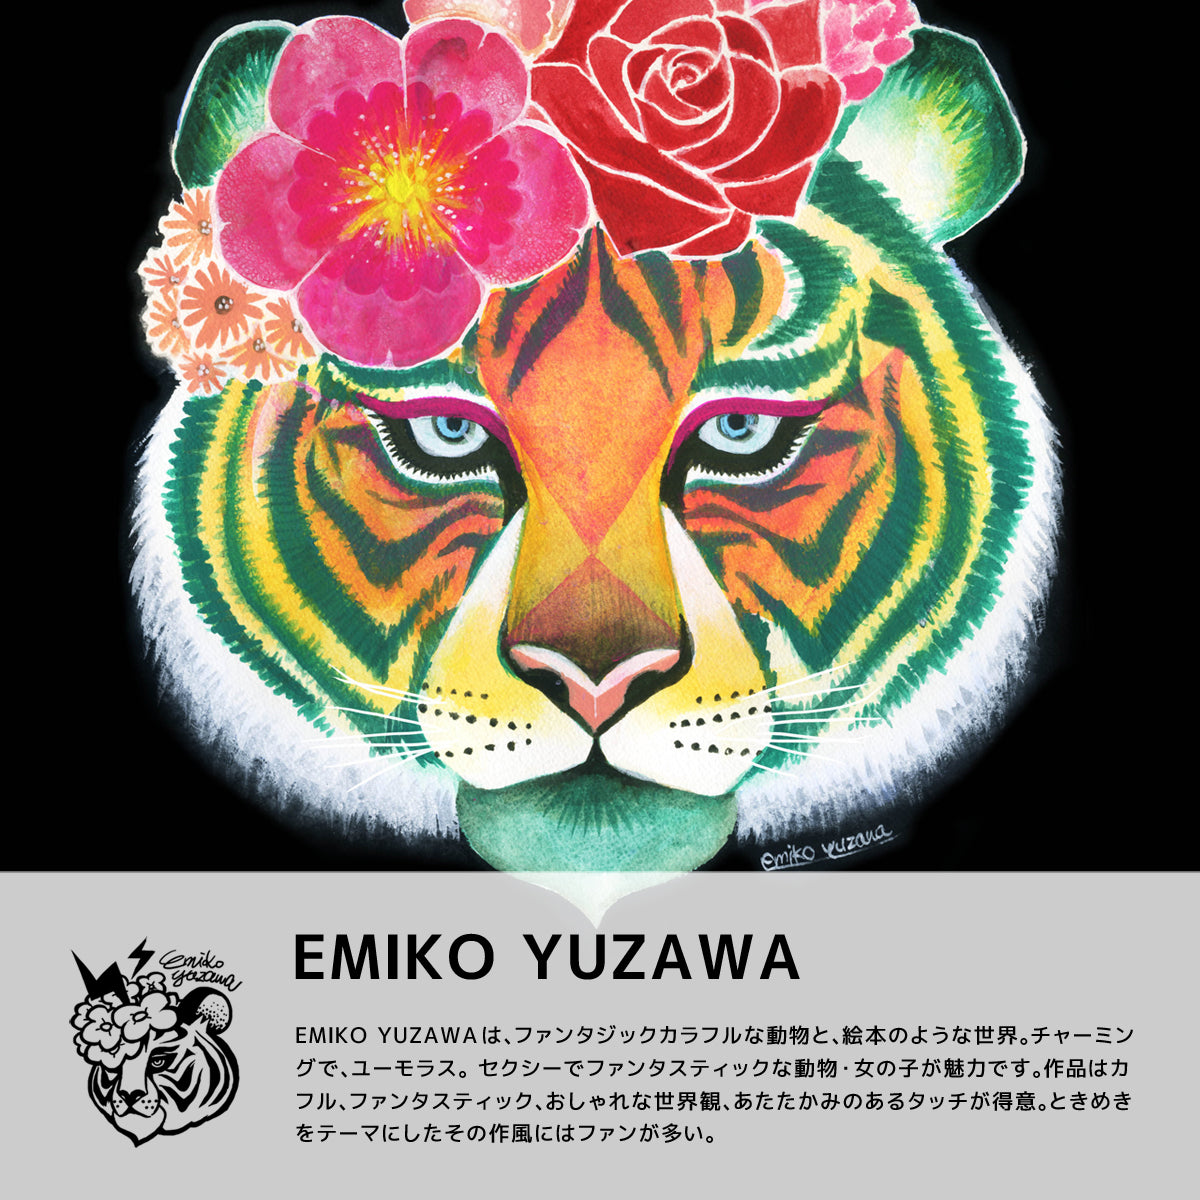 EMIKO YUZAWAは、セクシーでファンタスティックな絵柄をあたたかなタッチで描くブランドです。